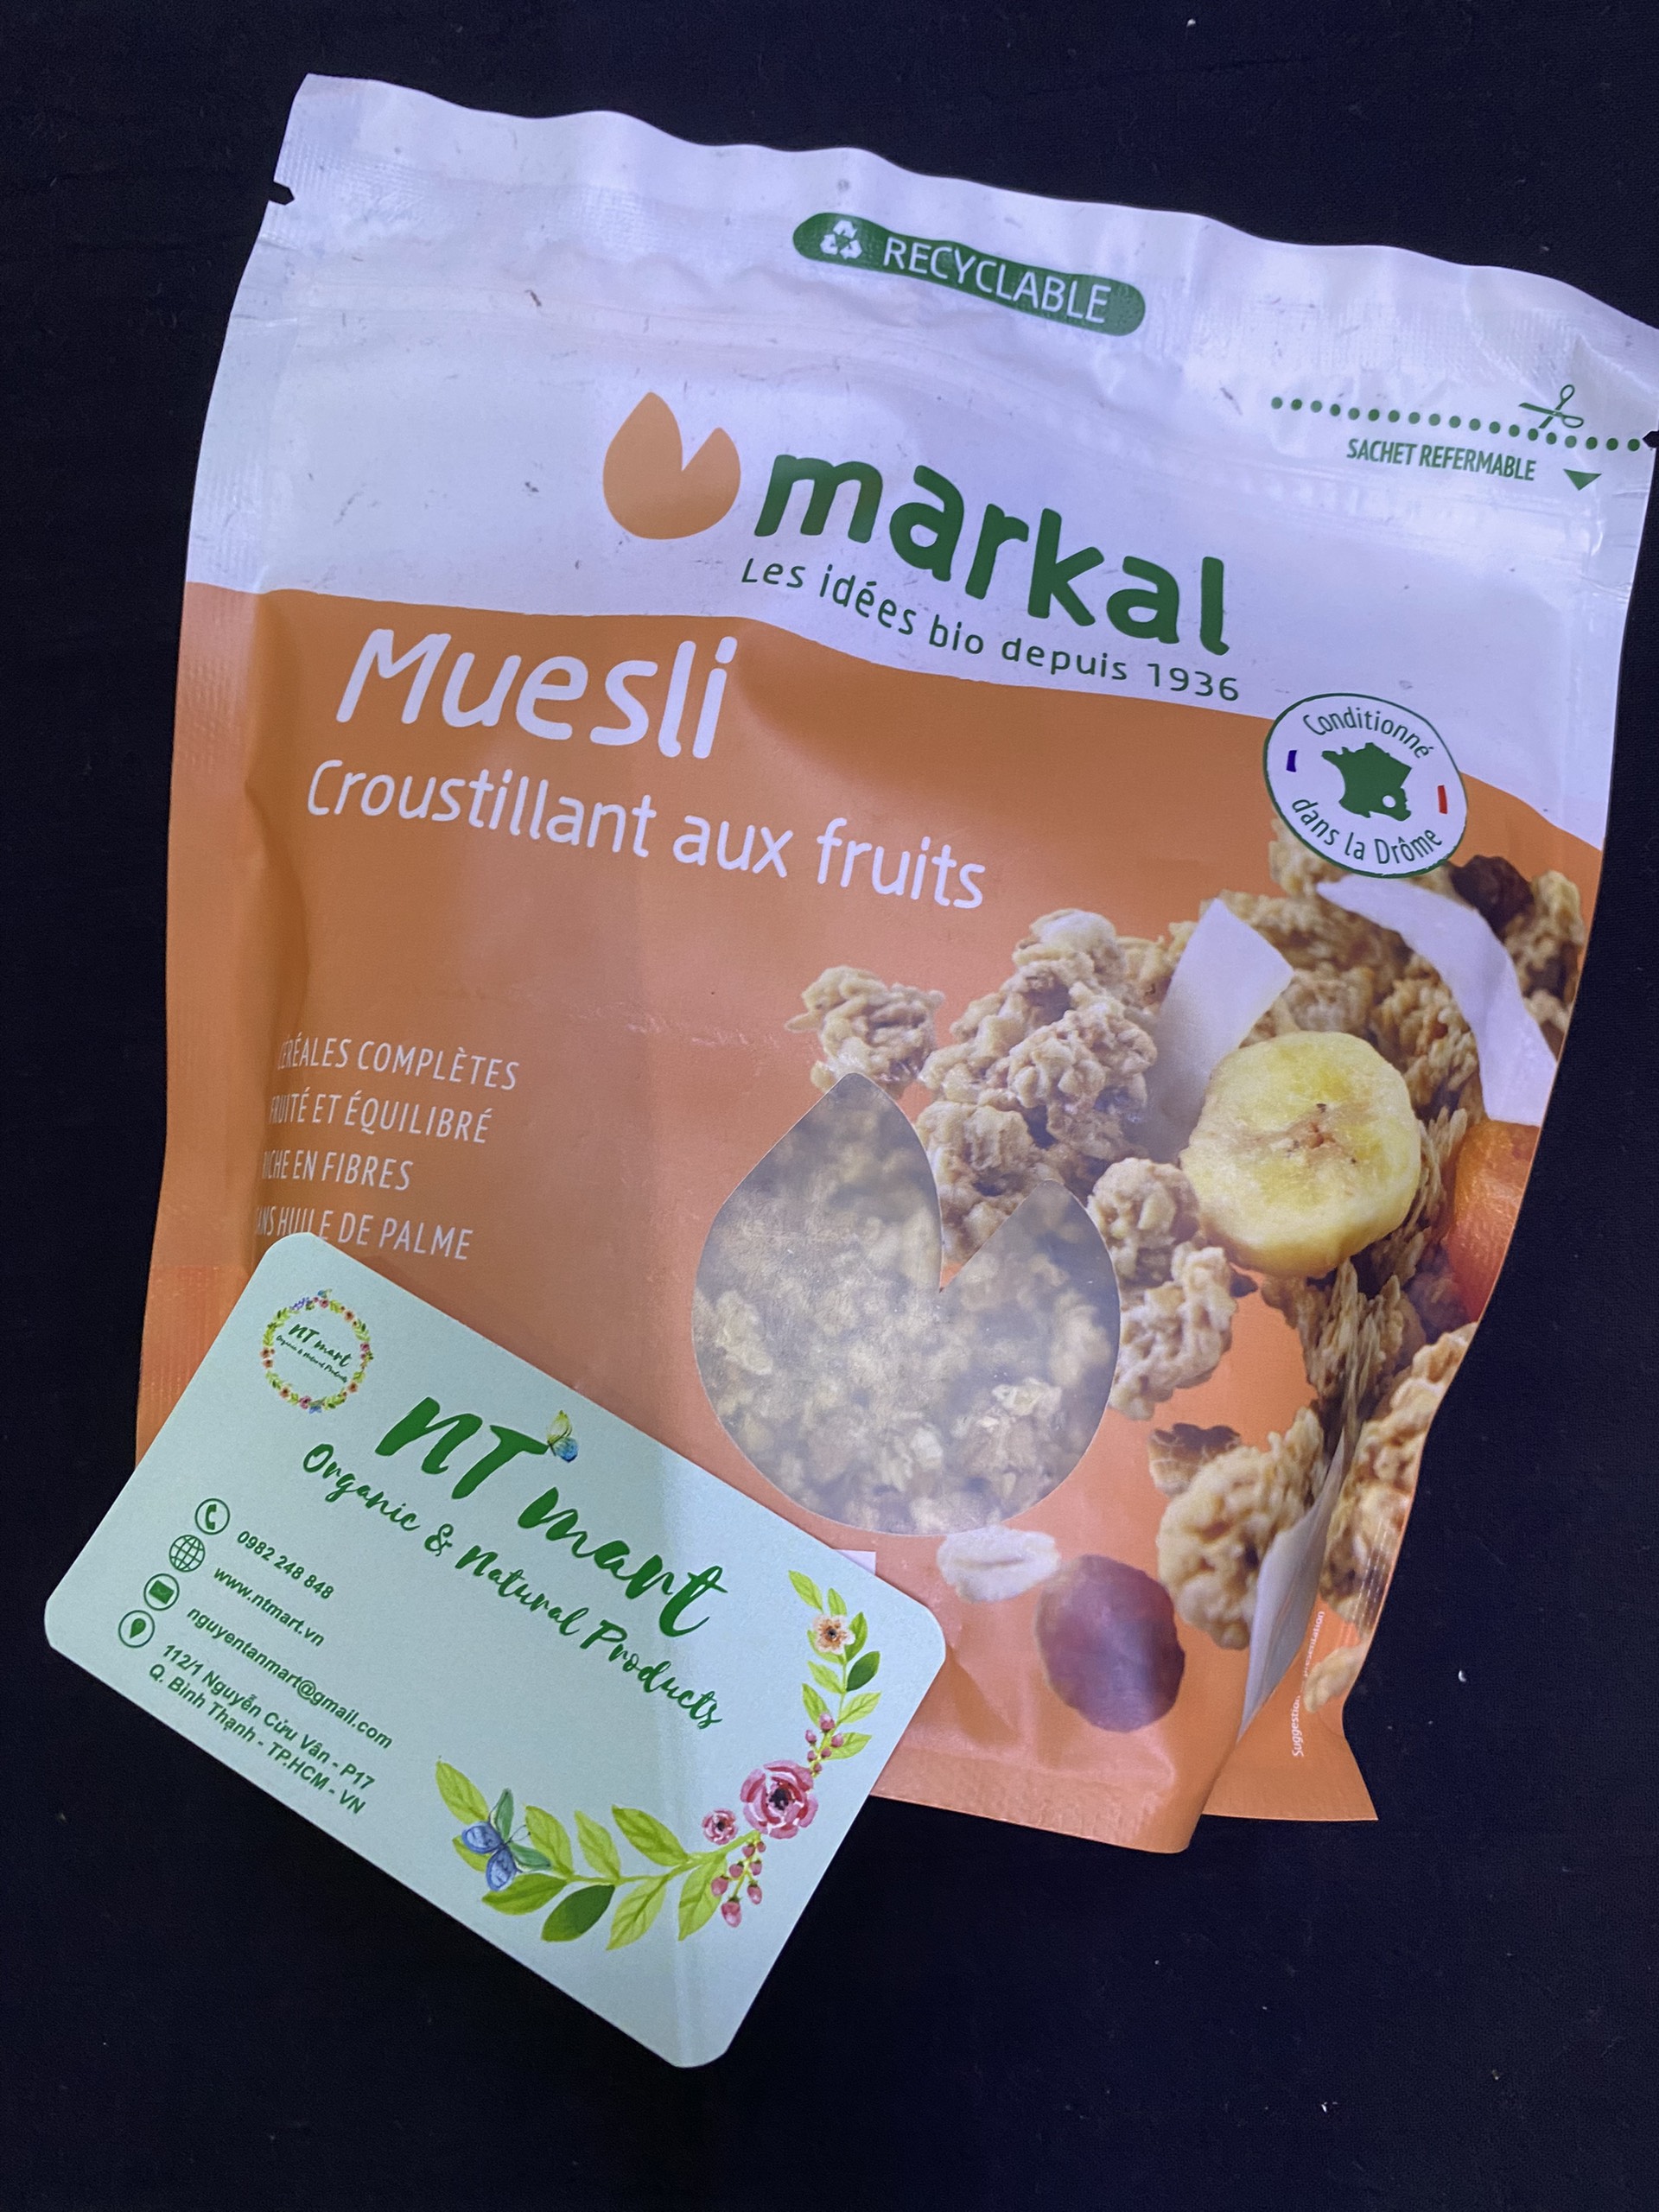 Ngũ cốc giòn trái cây hữu cơ Muesli Crunchy Markal 375g